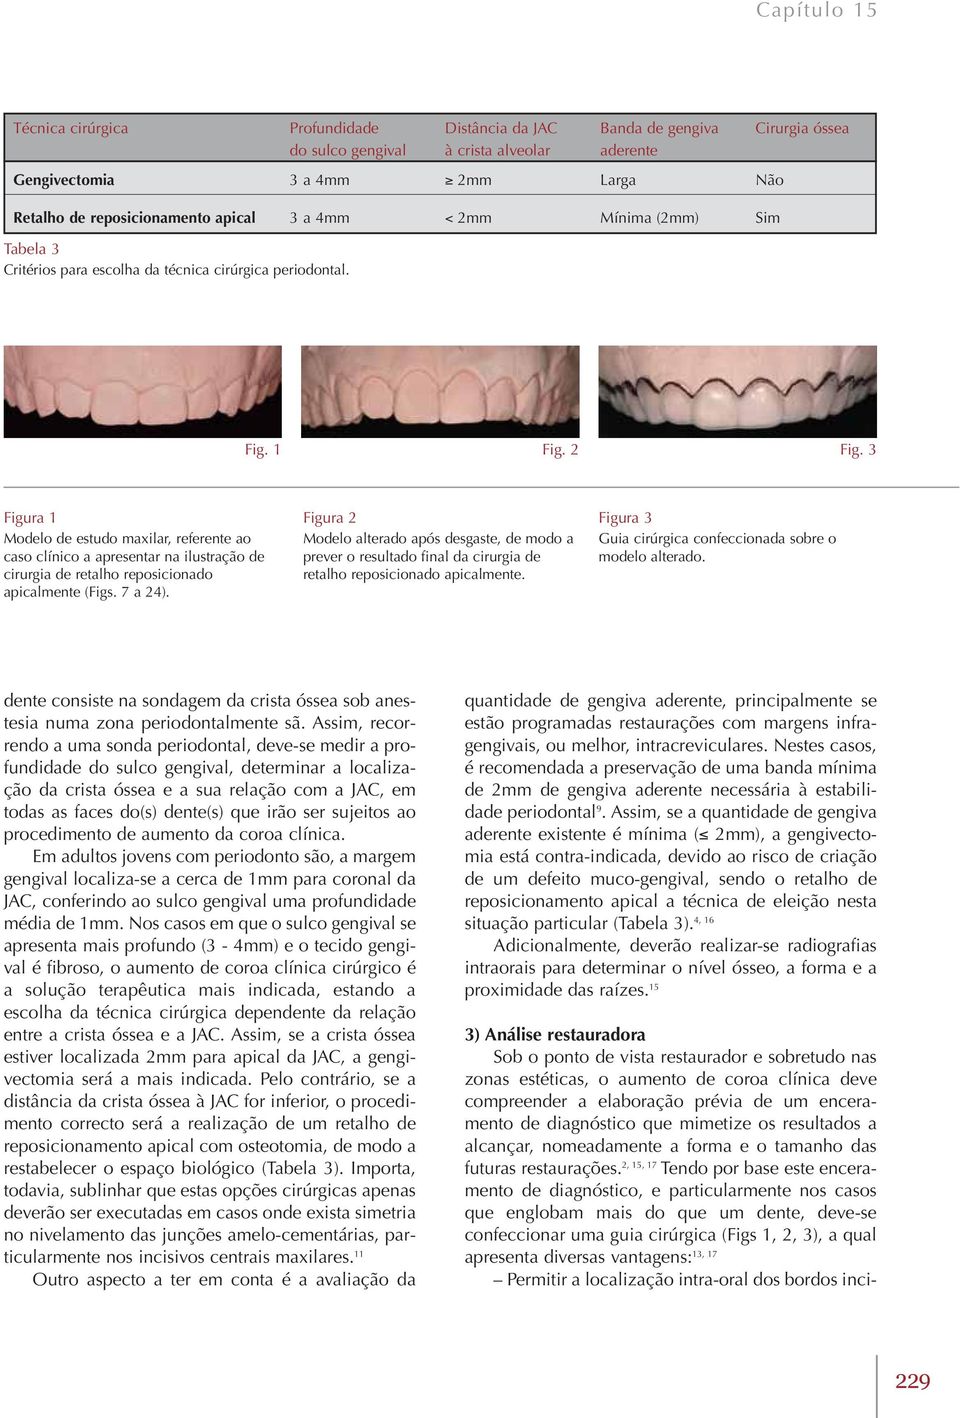 3 Figura 1 Modelo de estudo maxilar, referente ao caso clínico a apresentar na ilustração de cirurgia de retalho reposicionado apicalmente (Figs. 7 a 24).